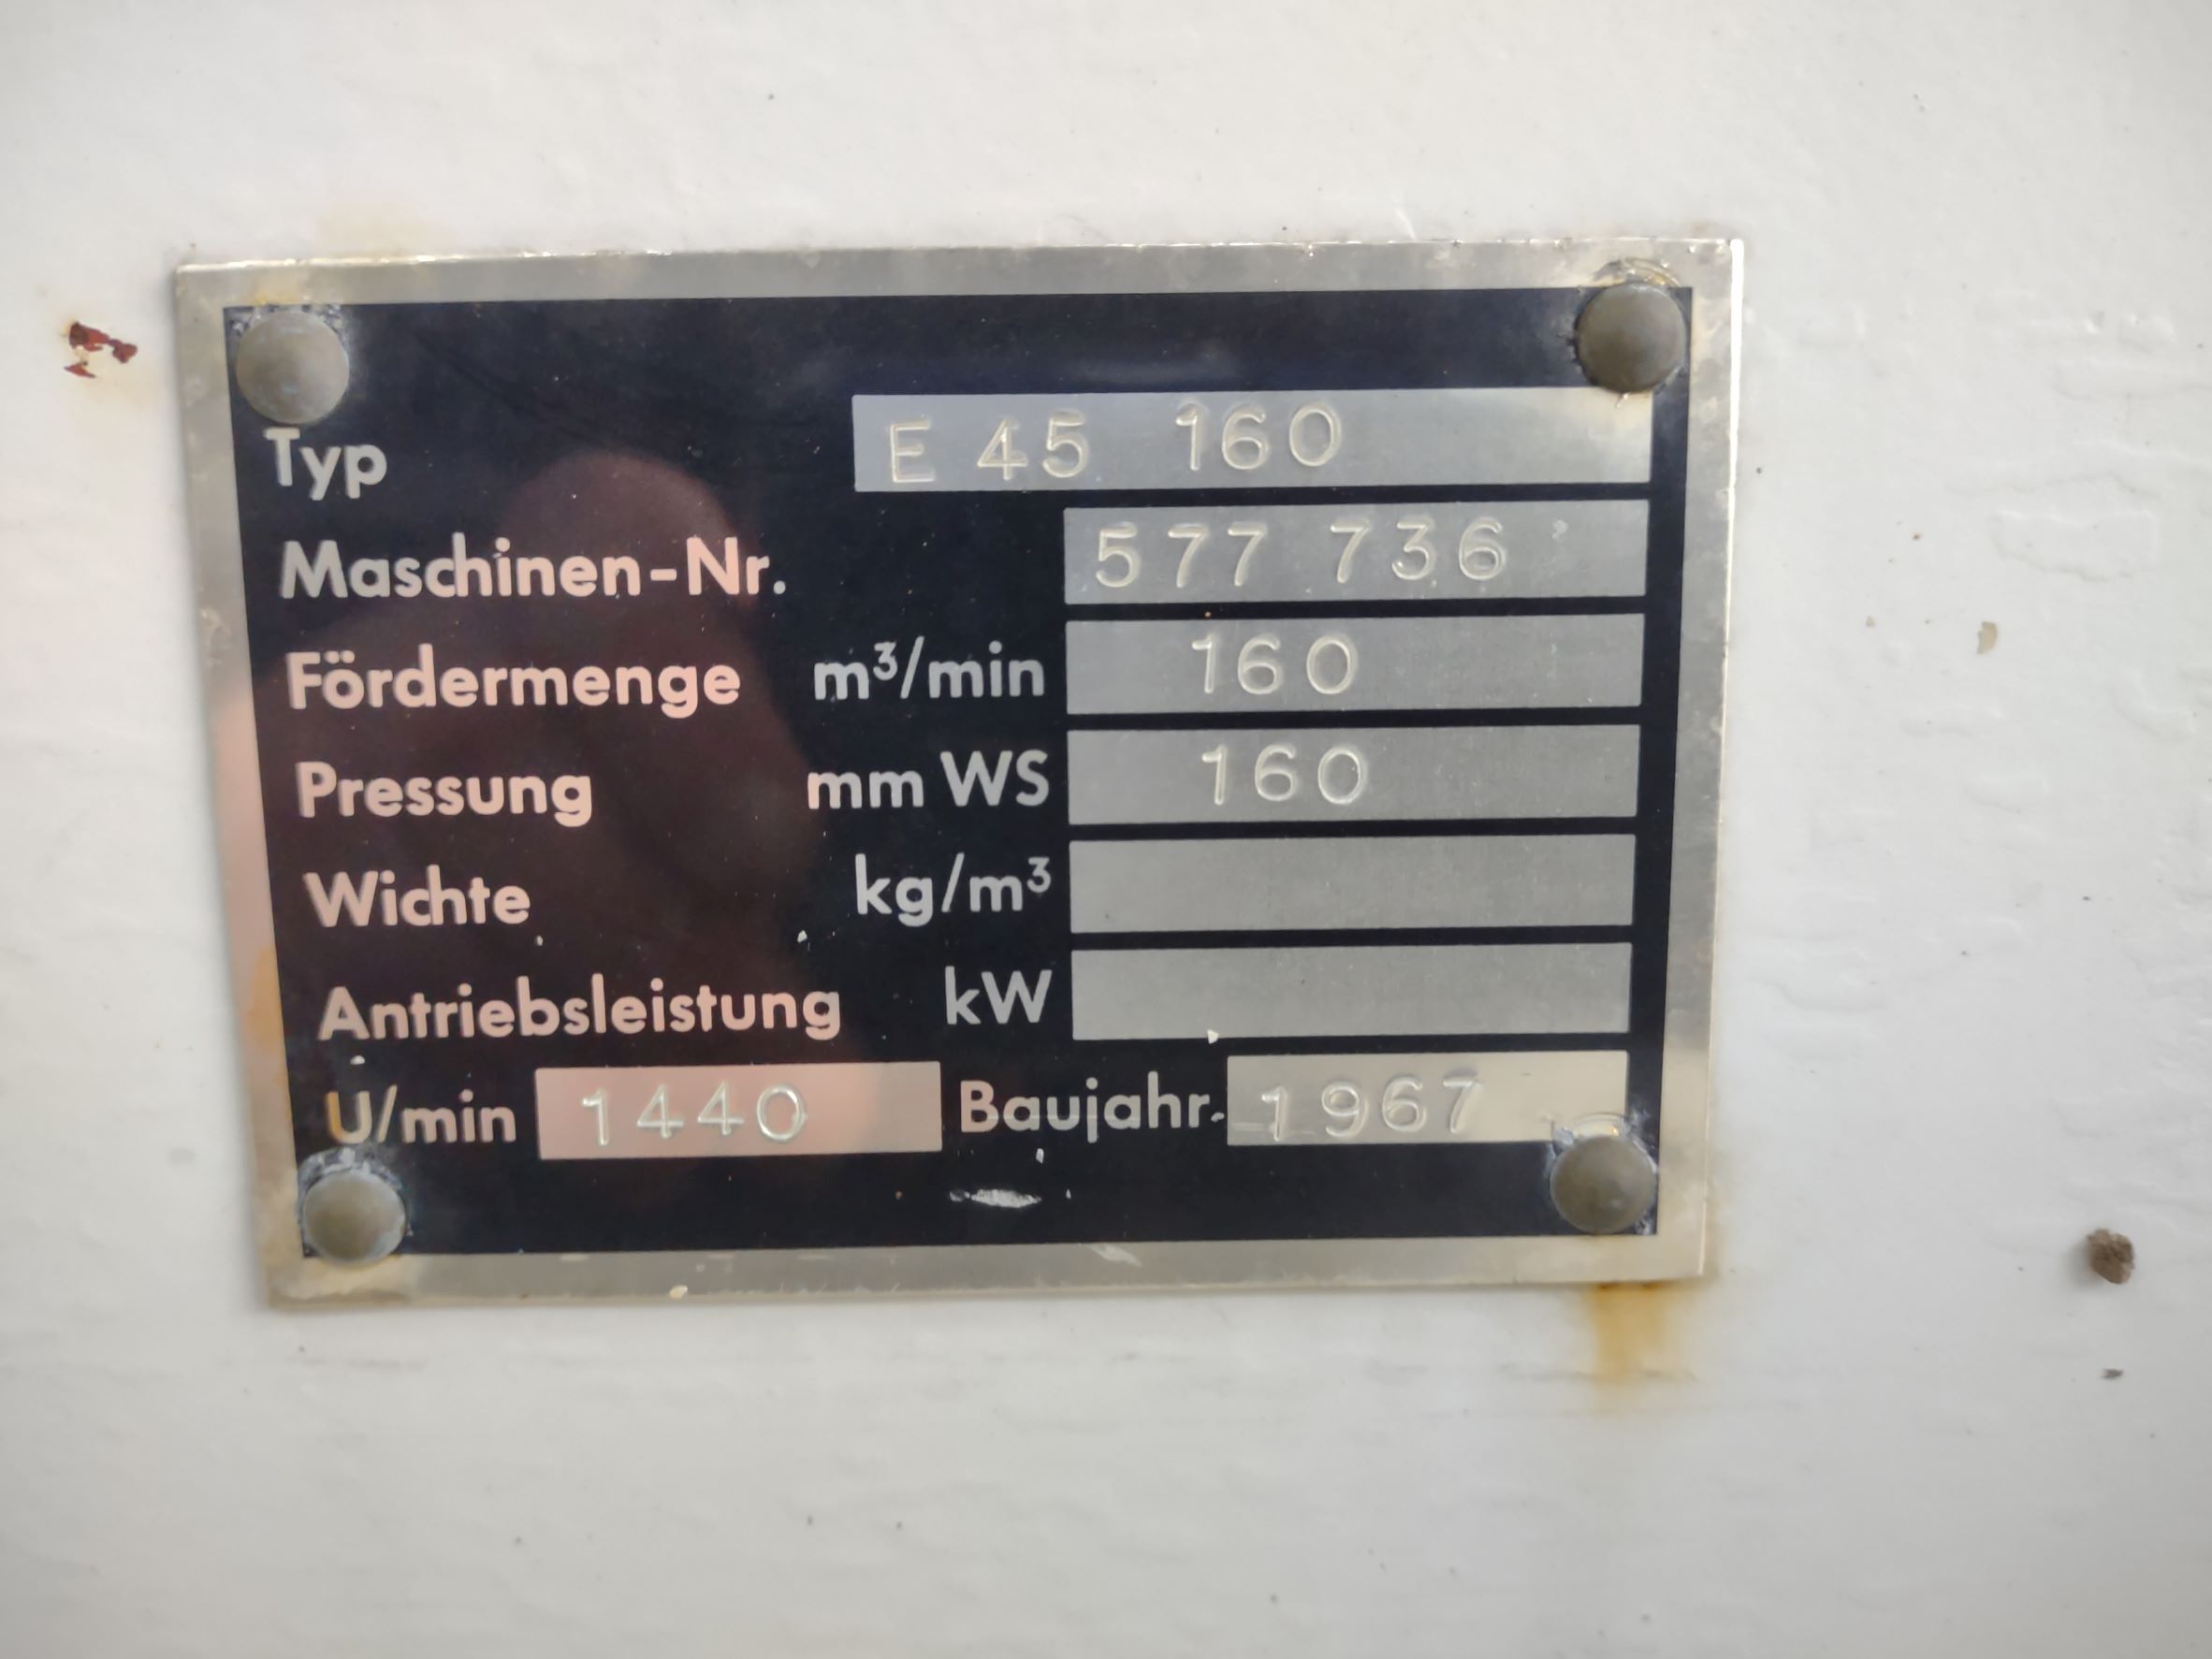 Ventilator Lüfter - 160 m³|min. ; ID 78